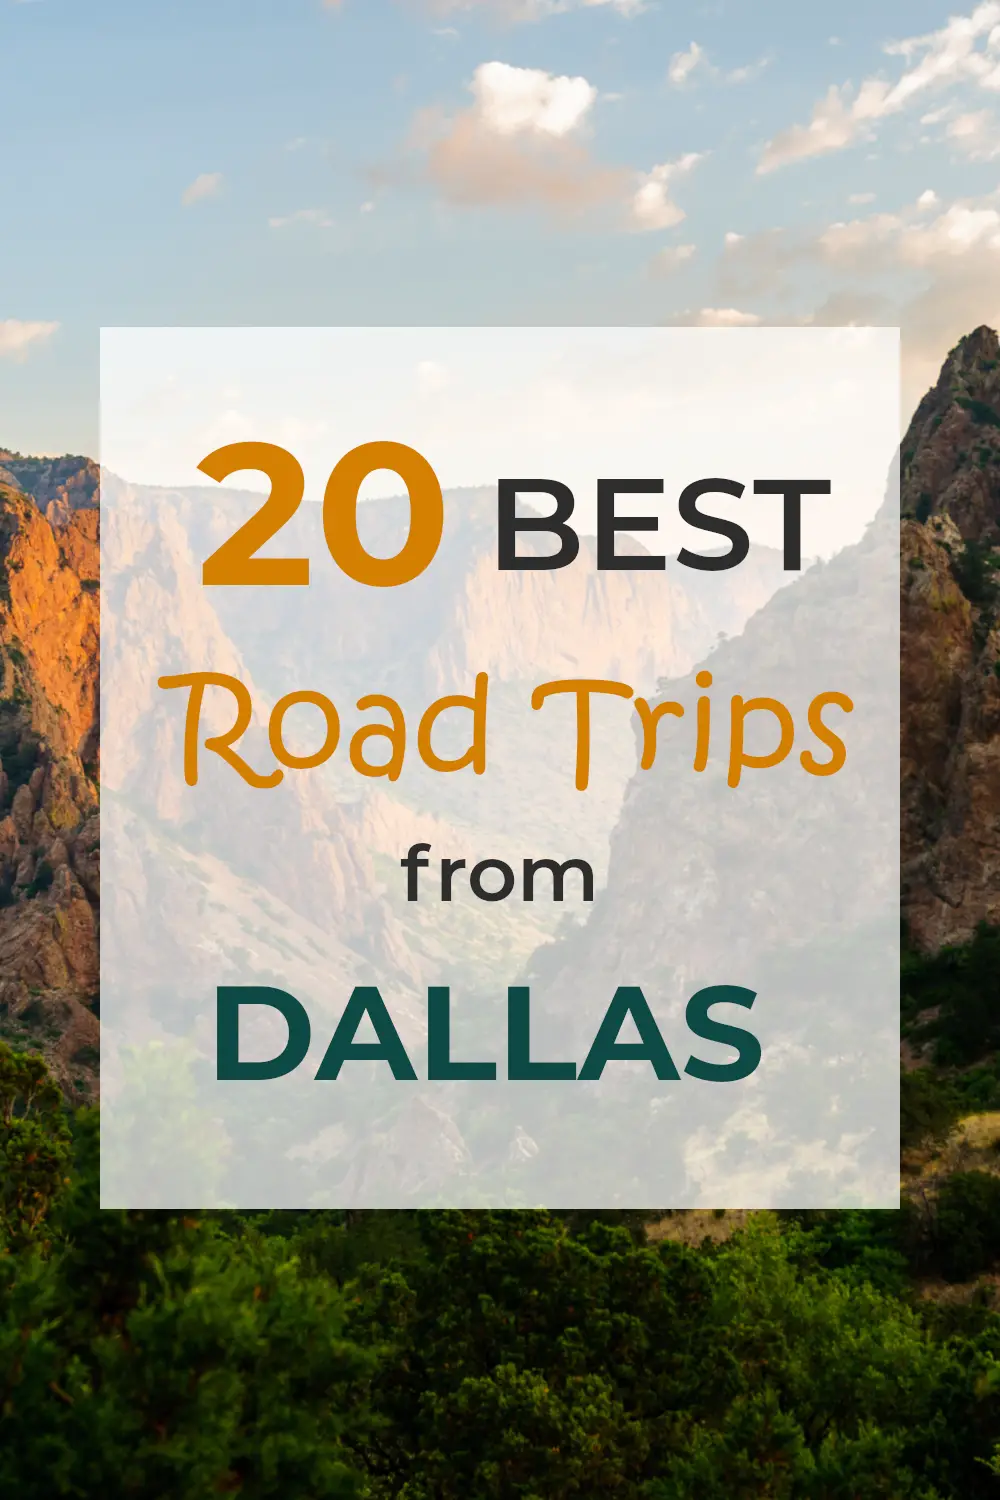 Una guía completa de los mejores viajes por carretera desde Dallas, desde viajes cortos de un día hasta viajes por carretera de una semana a otros estados.